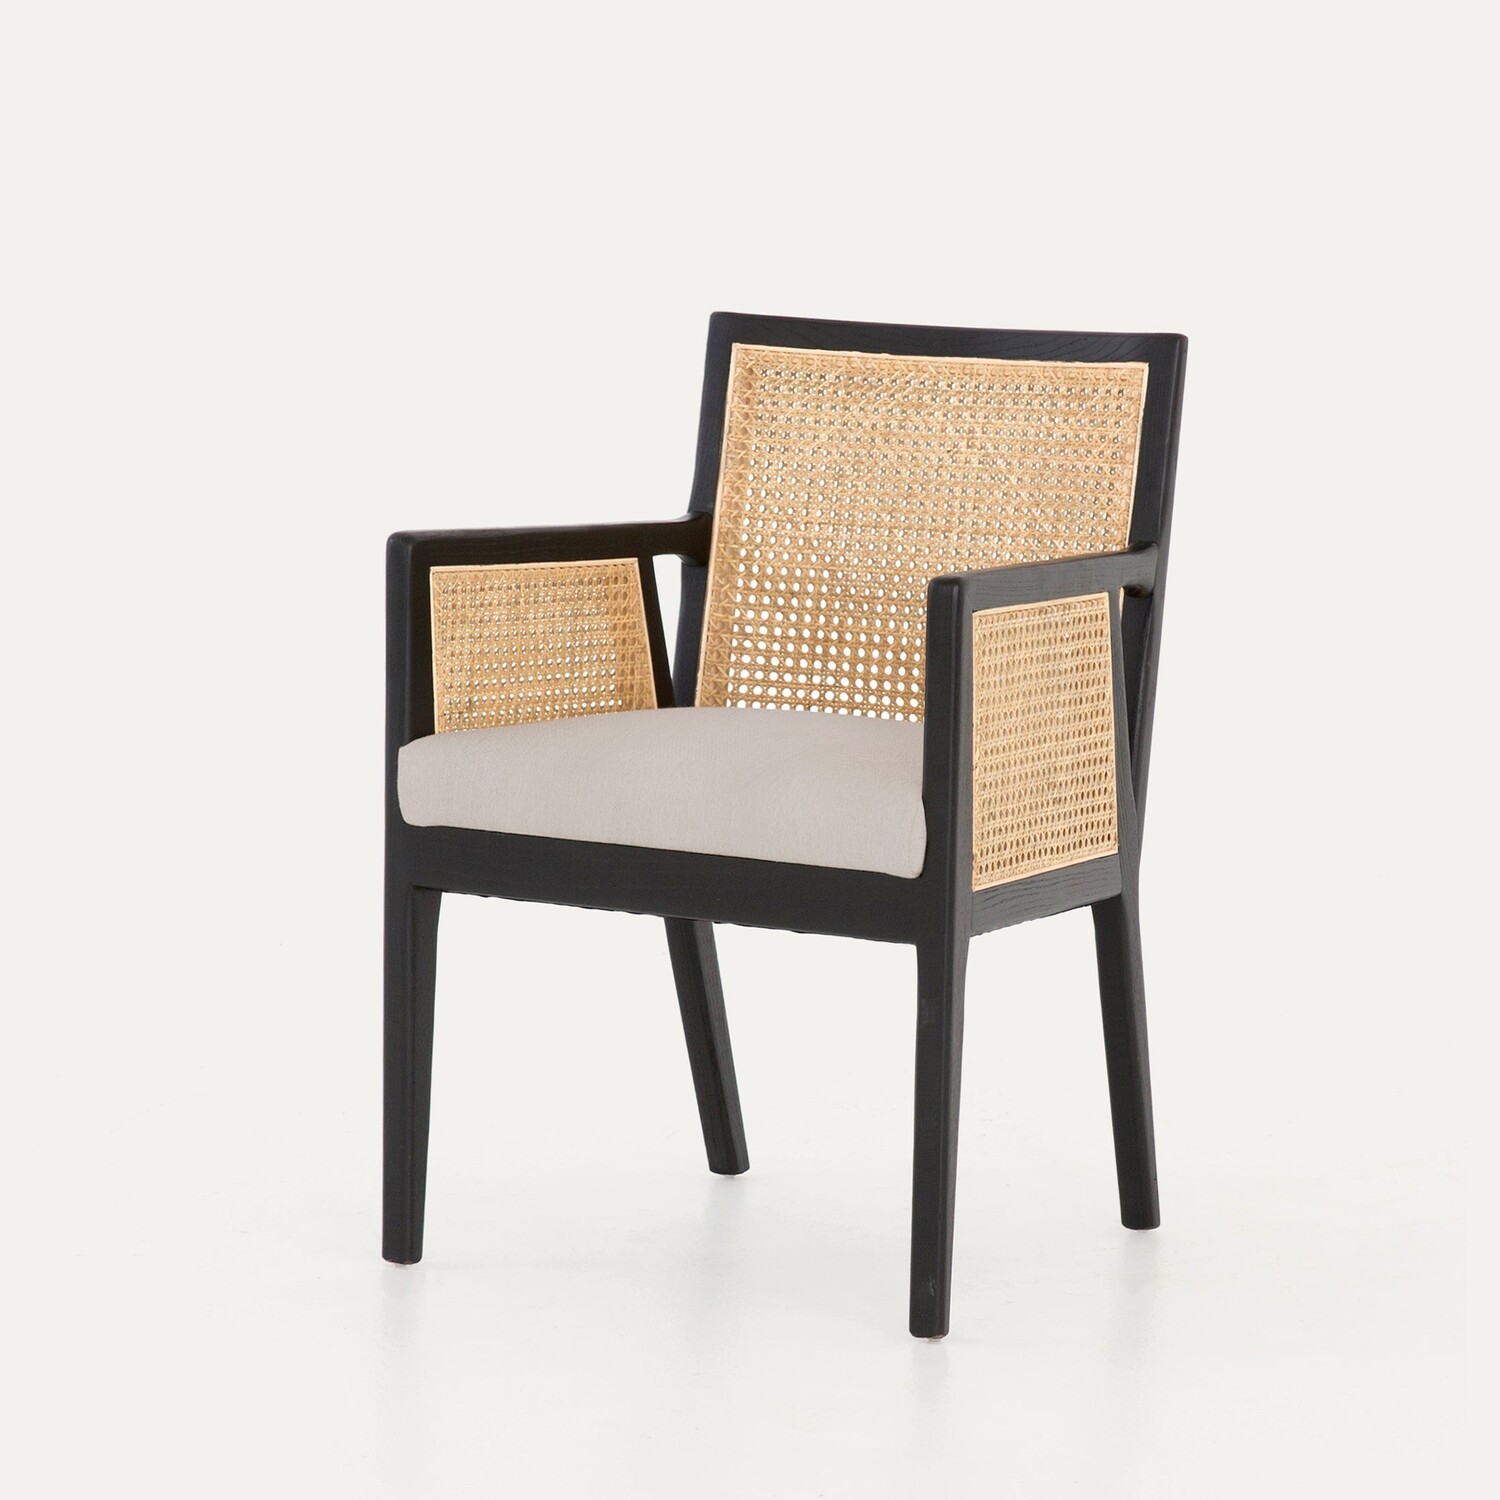 Kipling Upholstered Rattan Chair in Black Matte Finish